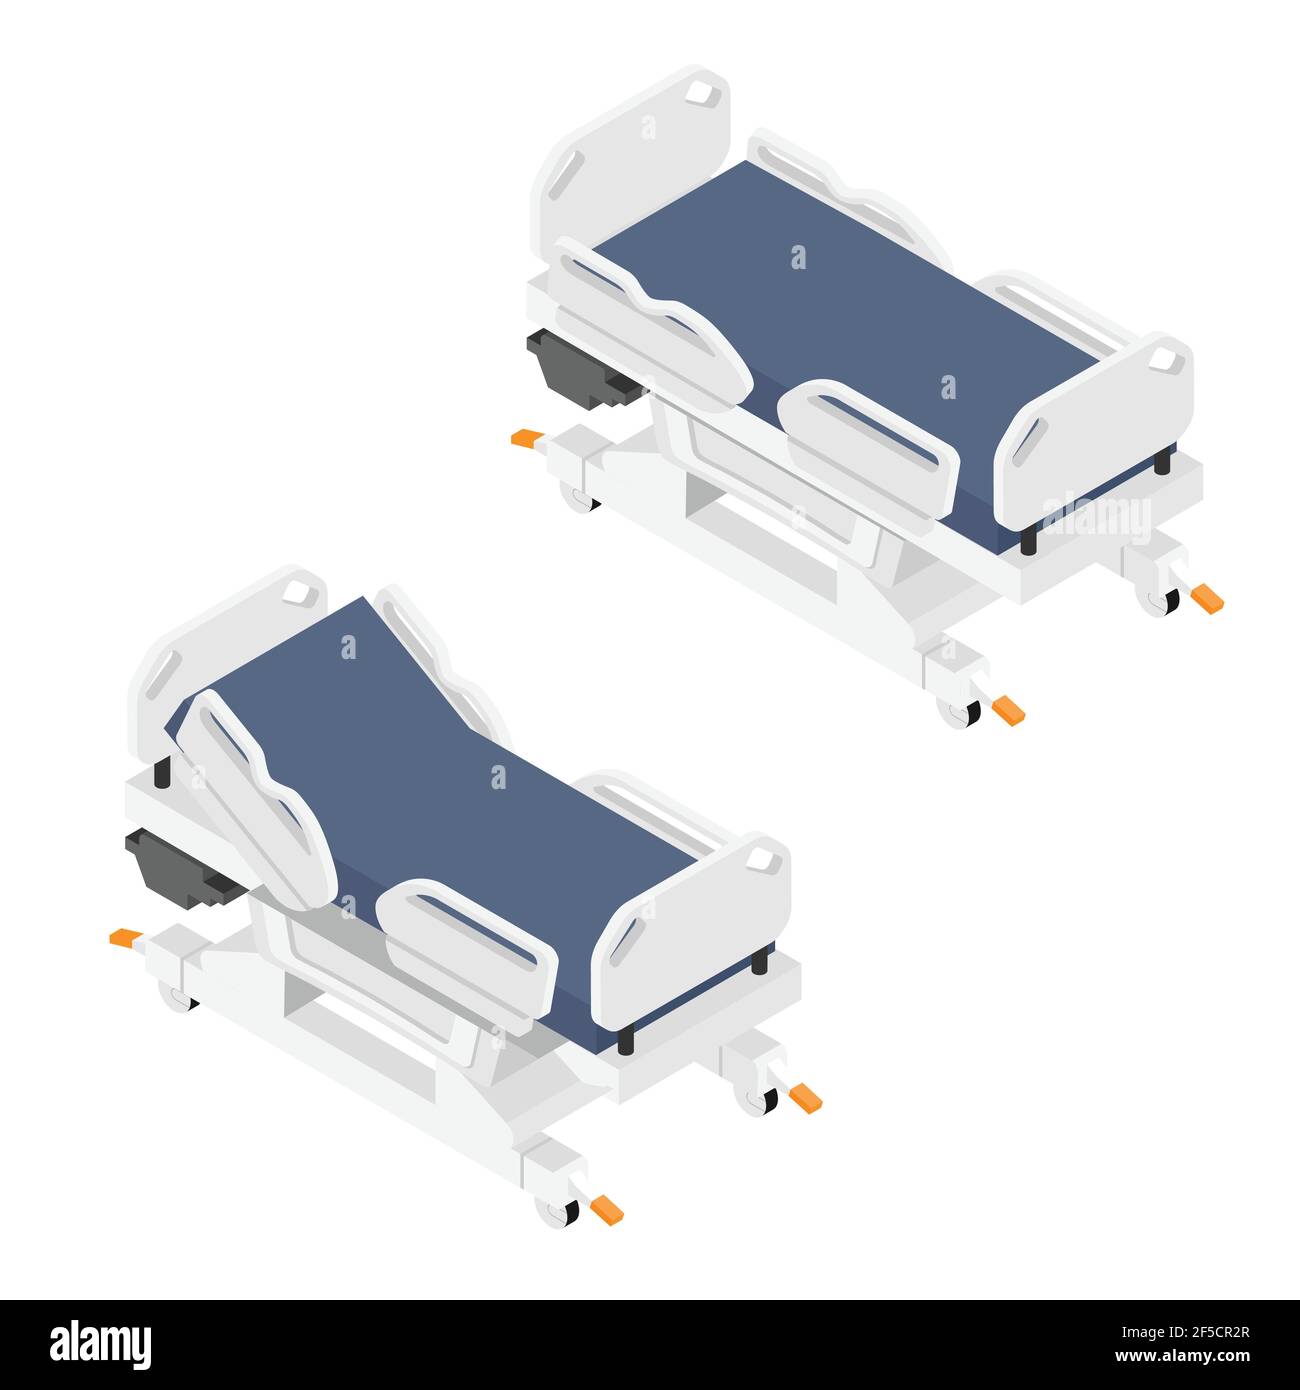 Mobile Hospital Medizinische Betten in verschiedenen Positionen  isometrische Ansicht auf weißem Hintergrund Stock-Vektorgrafik - Alamy